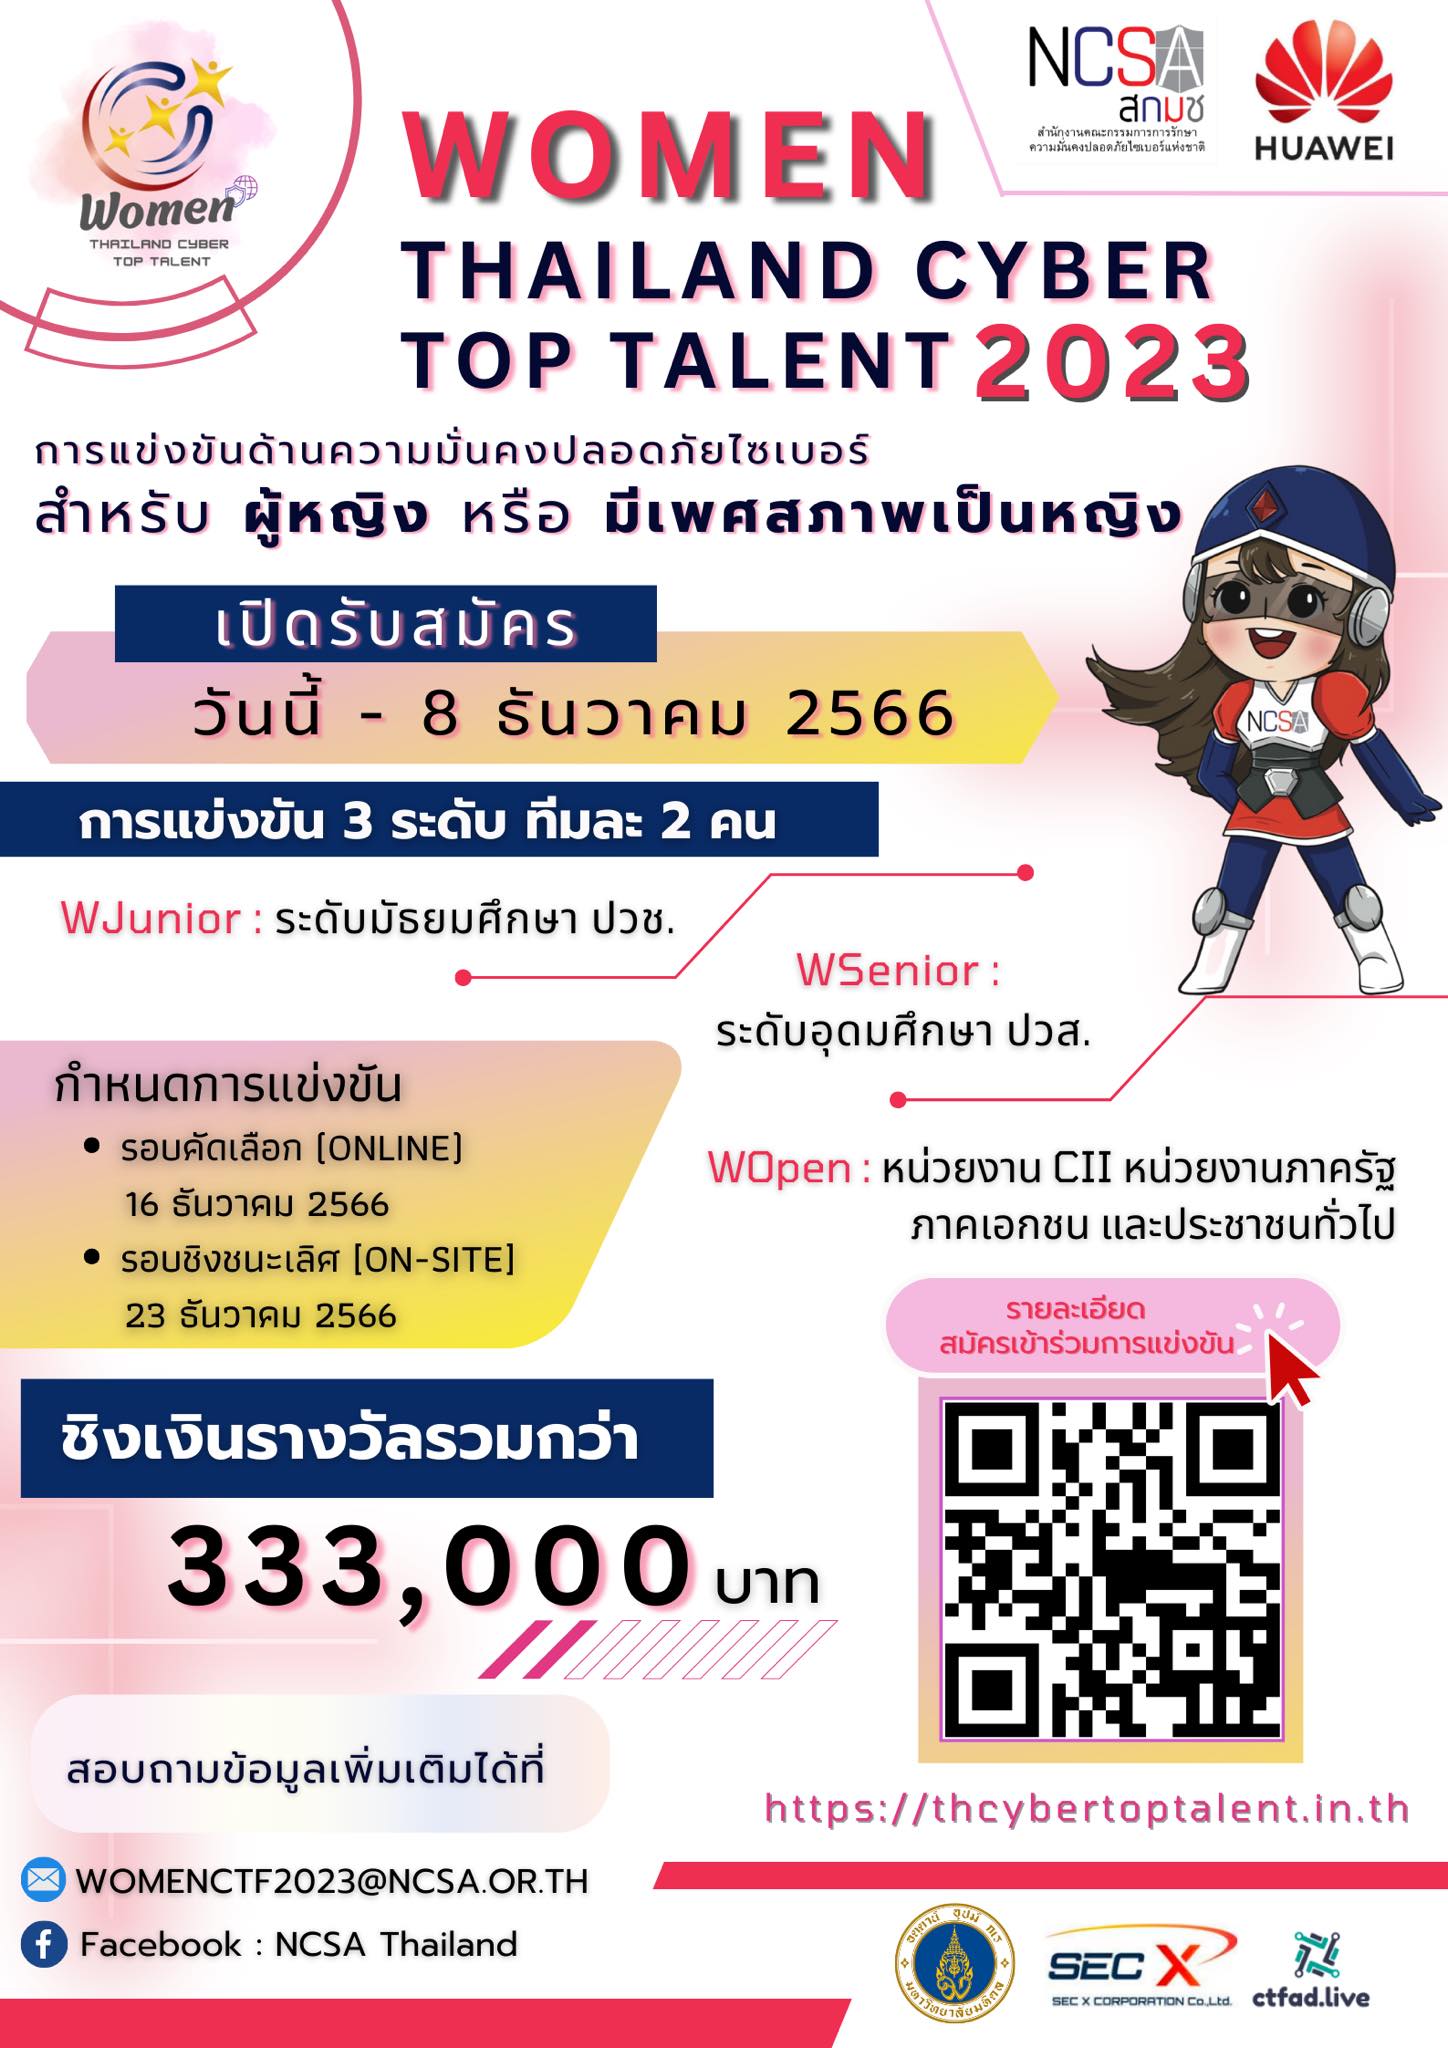 ประชาสัมพันธ์เข้าร่วมการแข่งขัน Woman Thailand Cyber Top Talent 2023